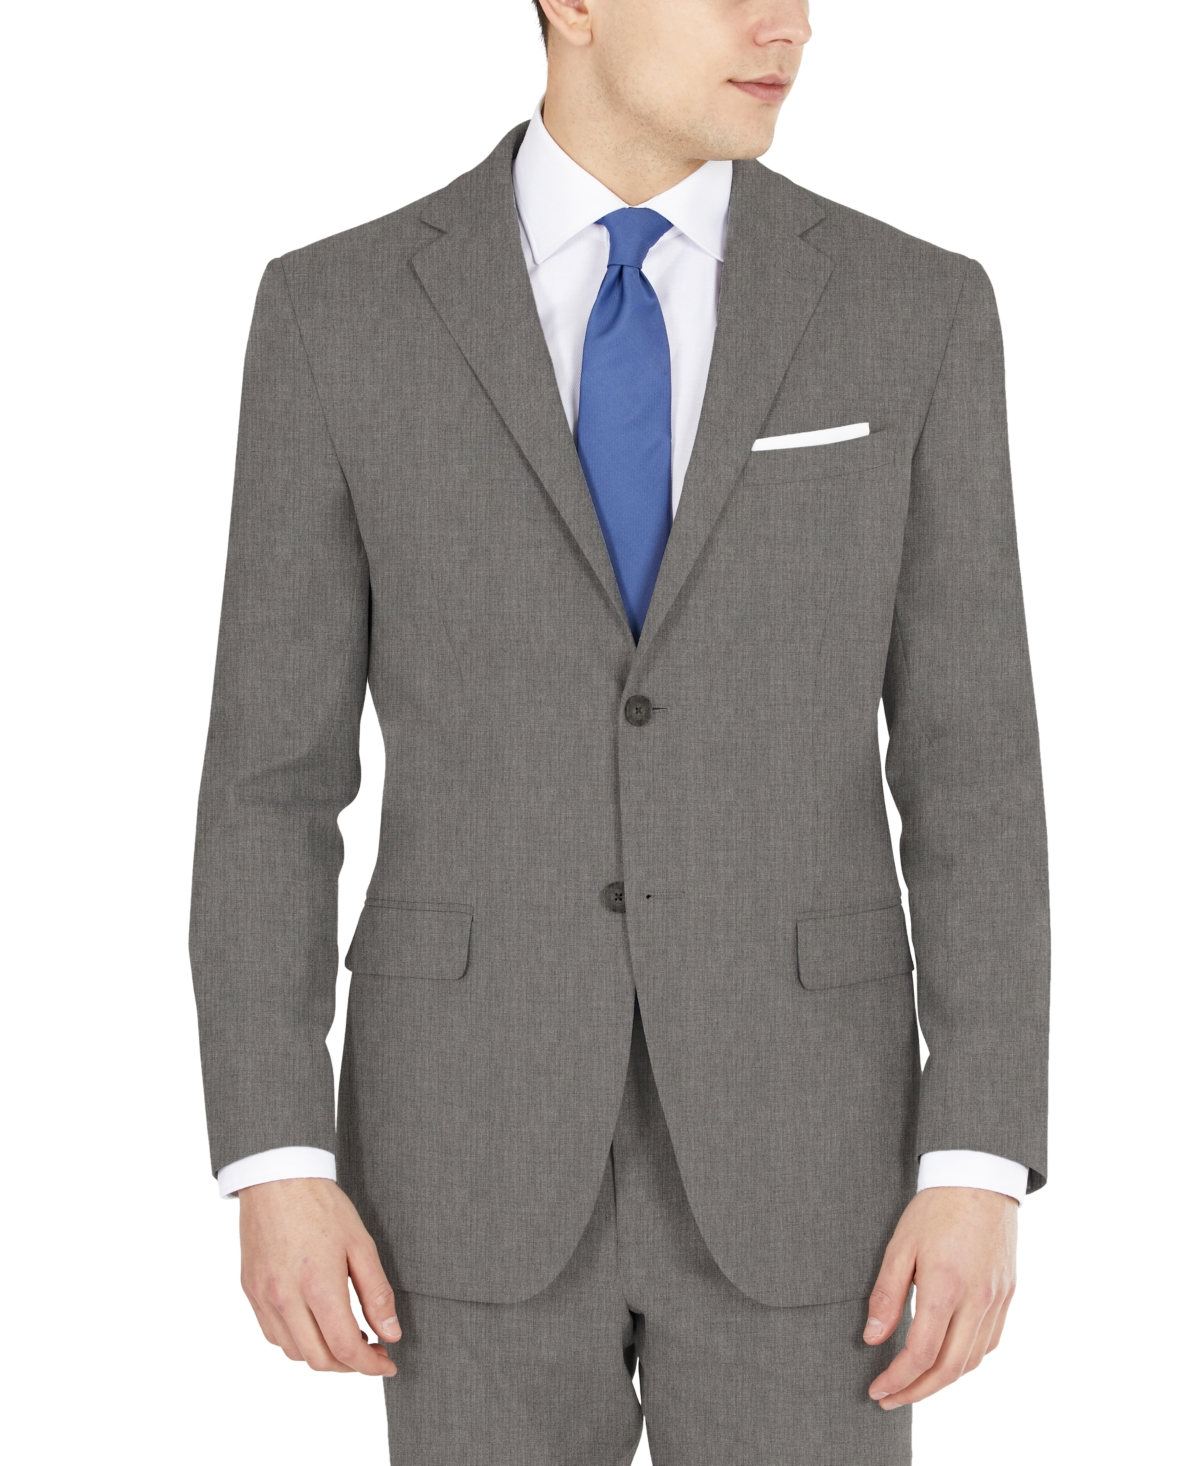 DKNY Men's Modern-Fit Stretch Suit Jacket & Reviews - Suits ...